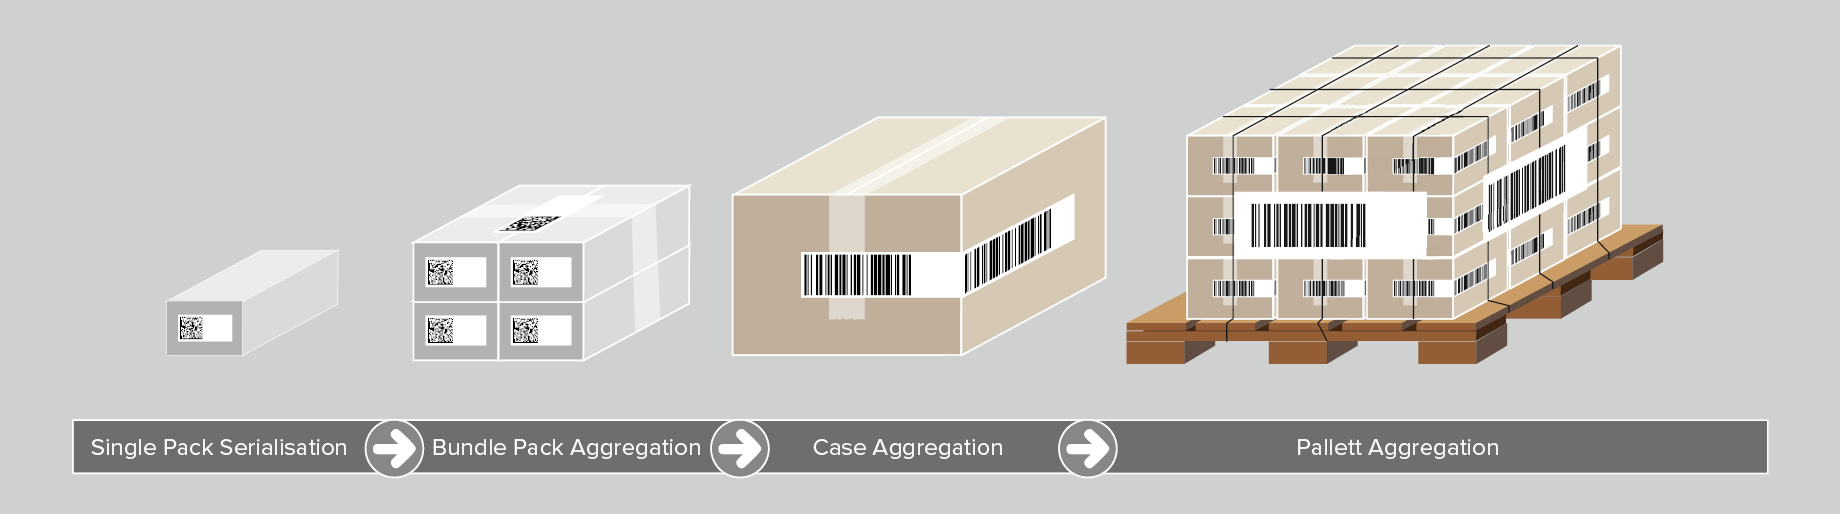 serialisatie en aggregatie van medische hulpmiddelen op verschillende verpakkingsniveaus